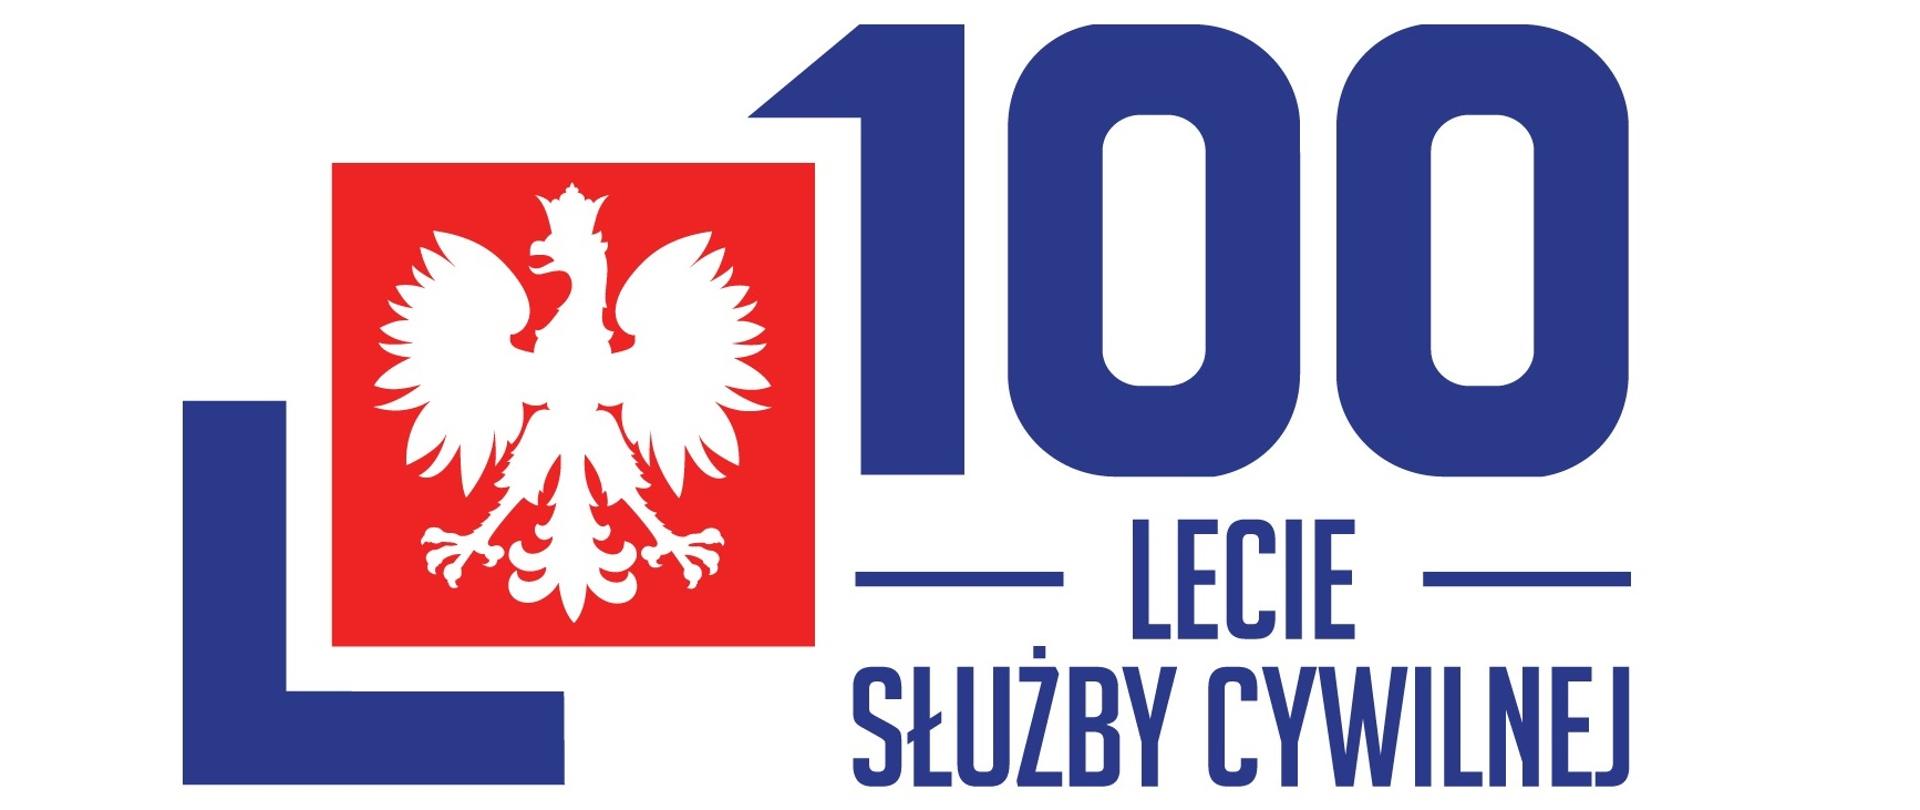 Logotyp 100 lat służby cywilnej